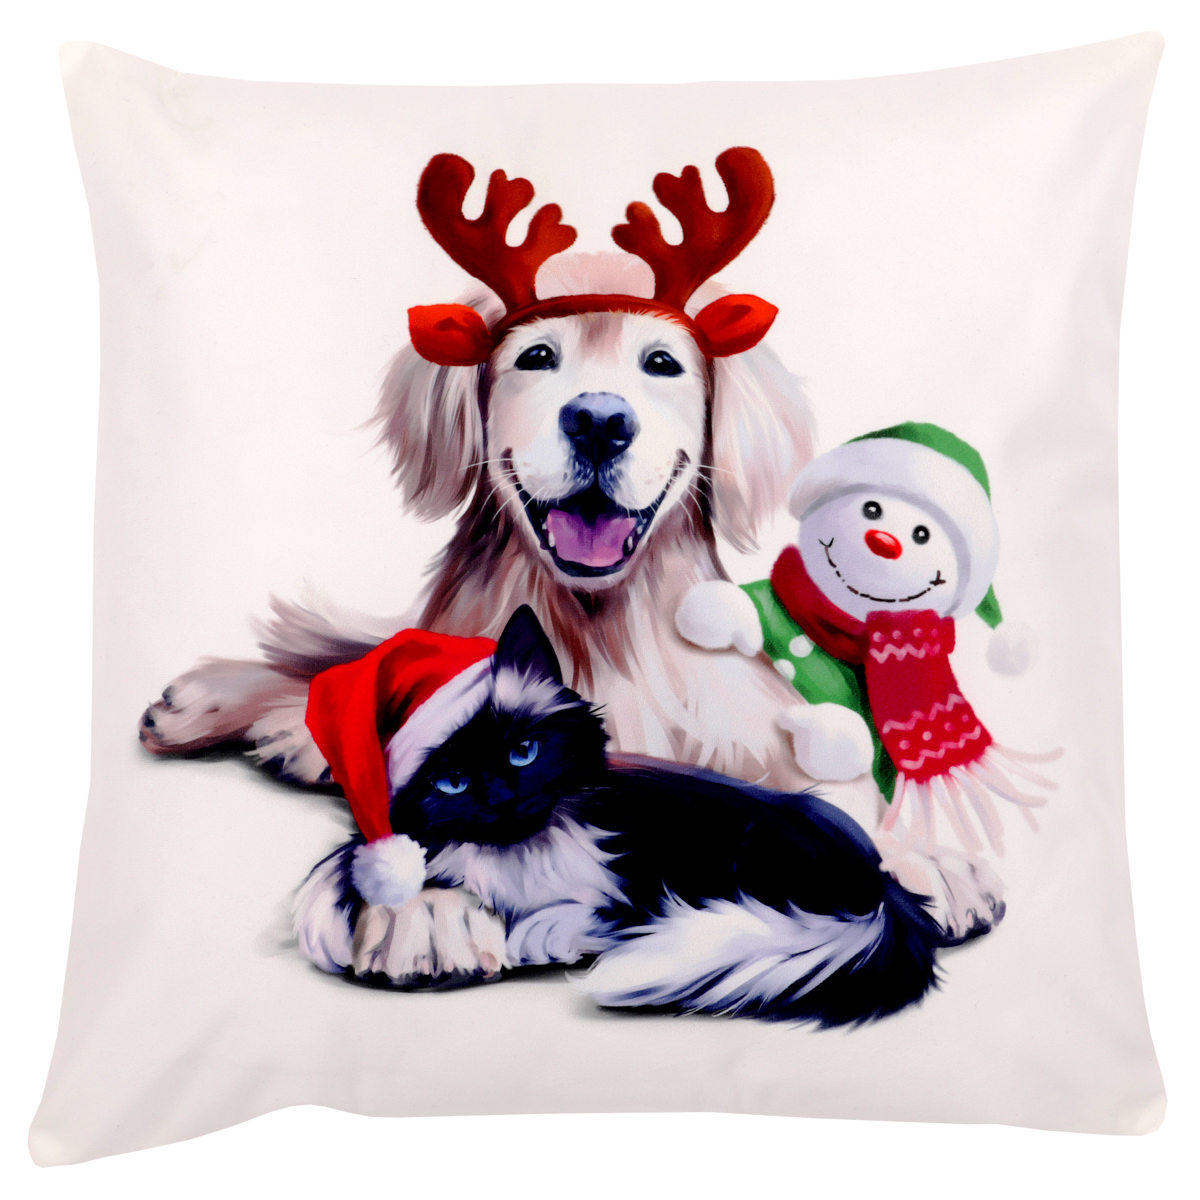 Polštář s výplní, samet. Vánoční motiv, pes, kočka a sněhulák. 45x45 cm.